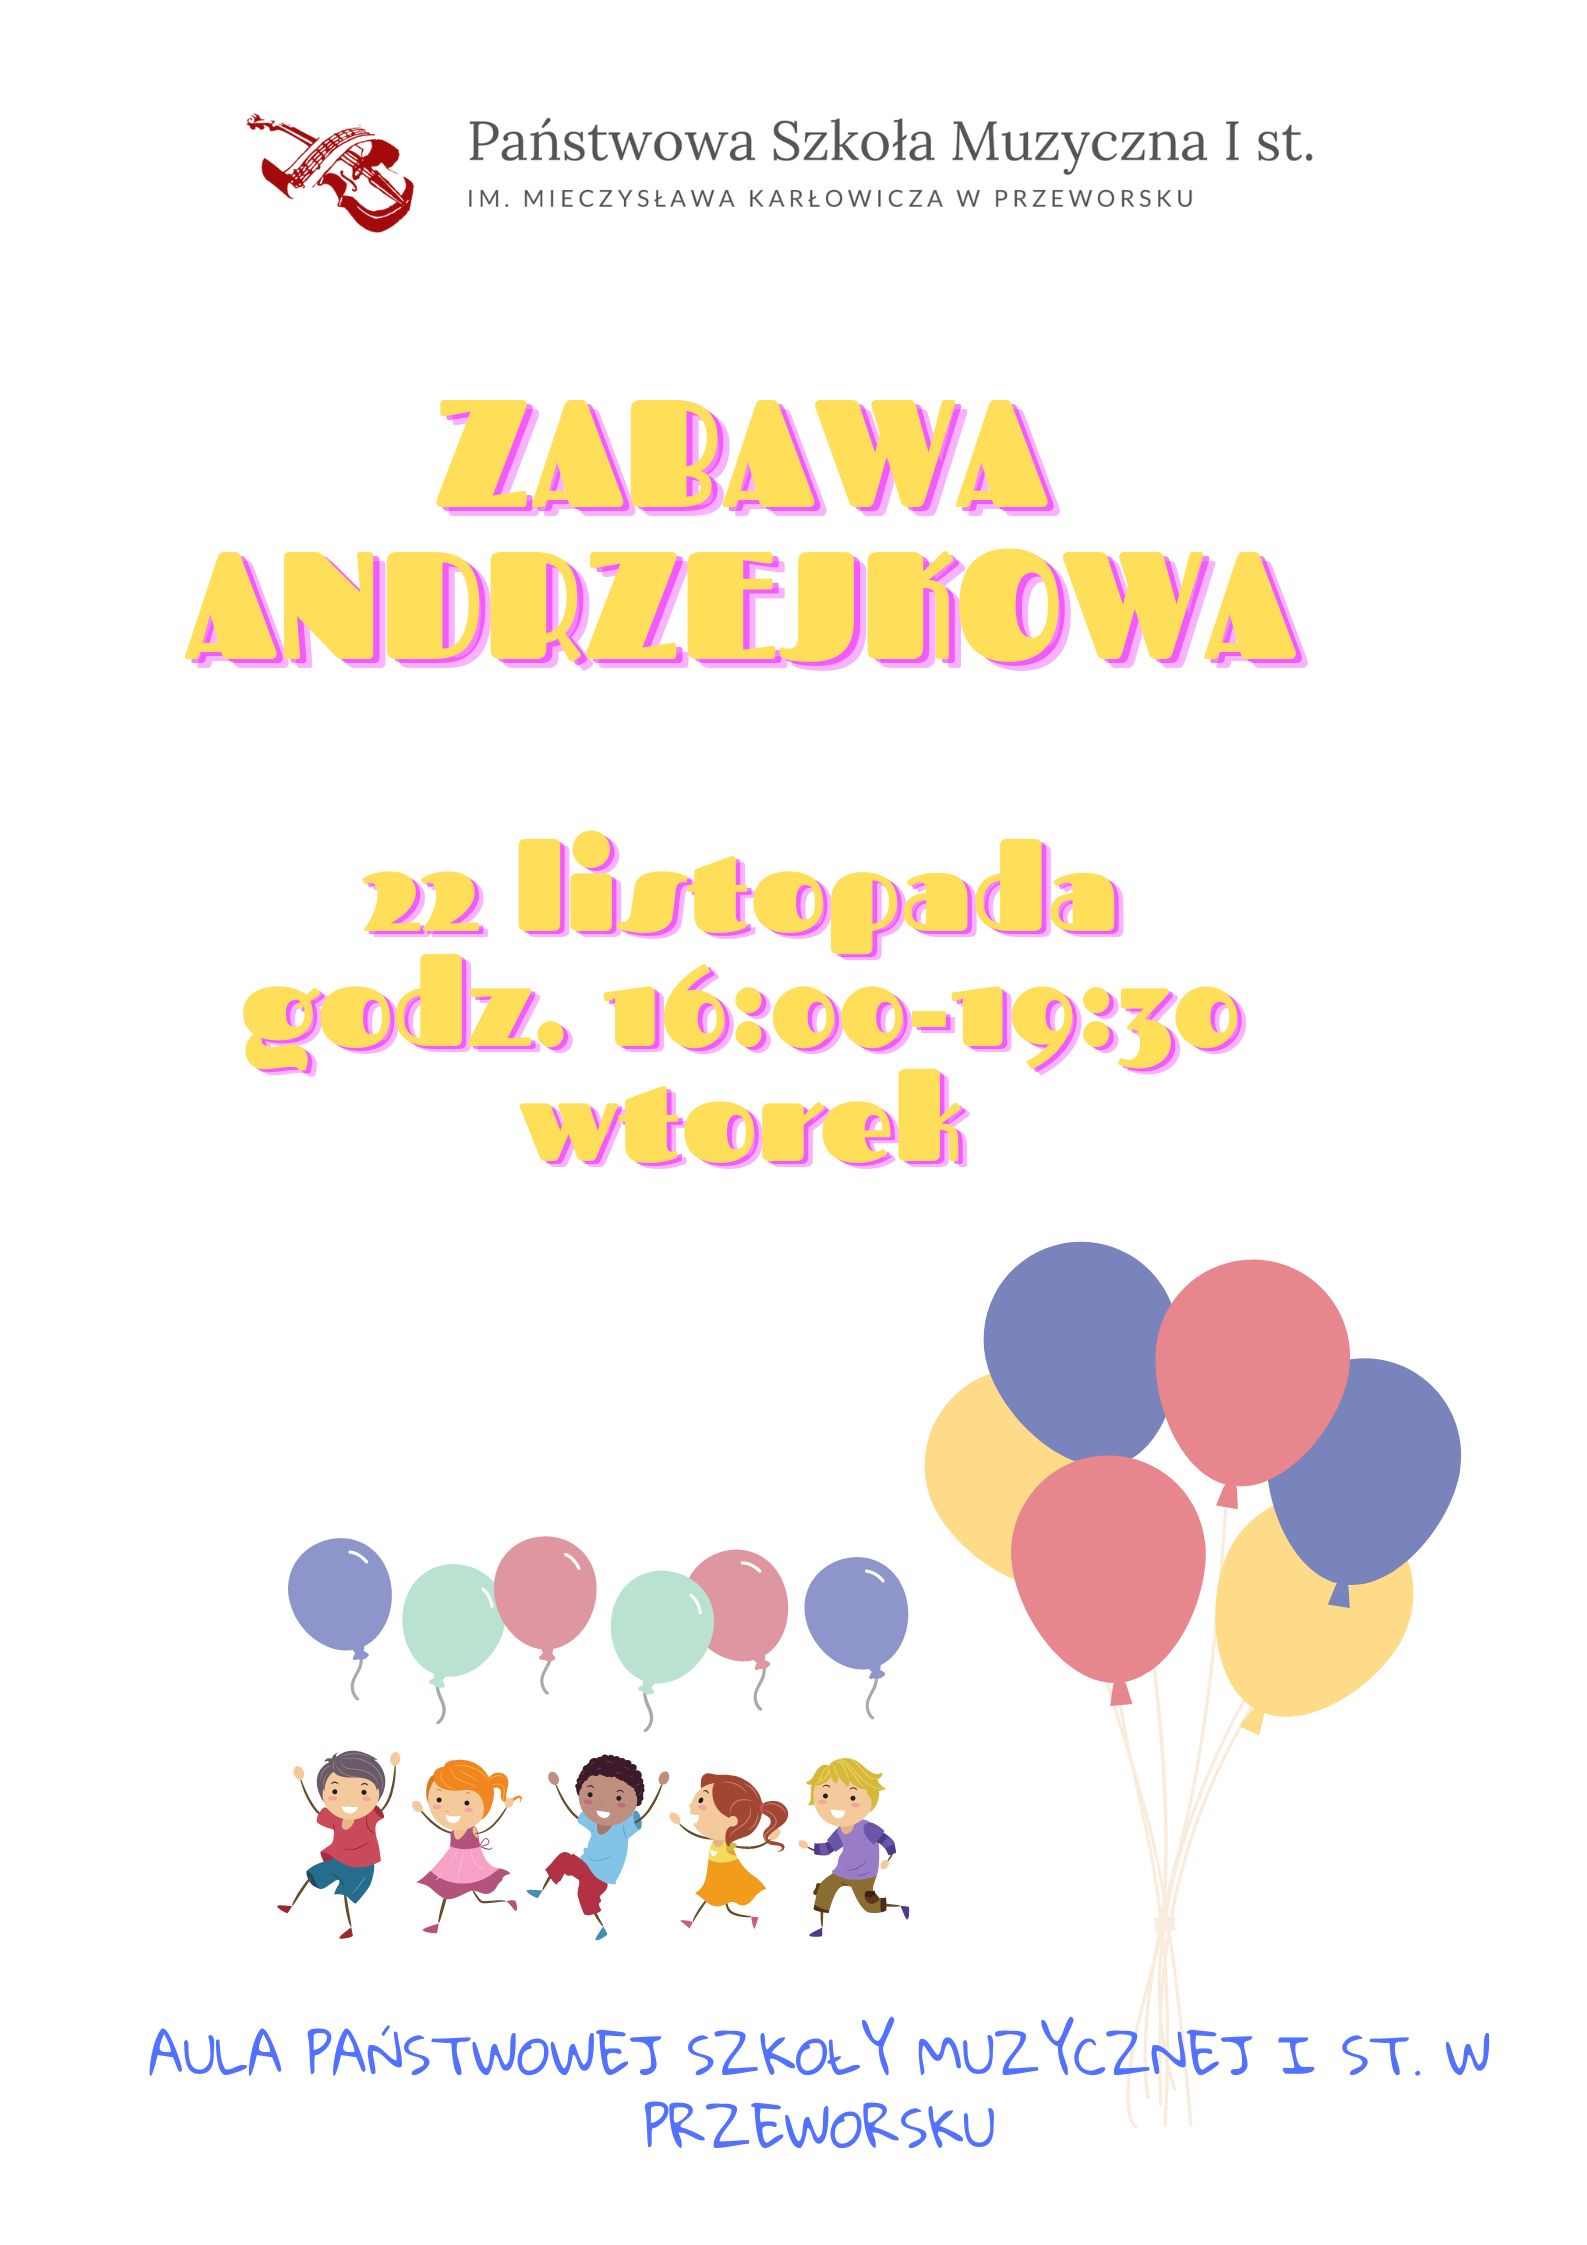 Plakat Przedstawiający dzieci z balonikami informujący o Zabawie Andrzejkowej w dniu 22 listopada 2022 w Auli PSM I st. w Przeworsku.